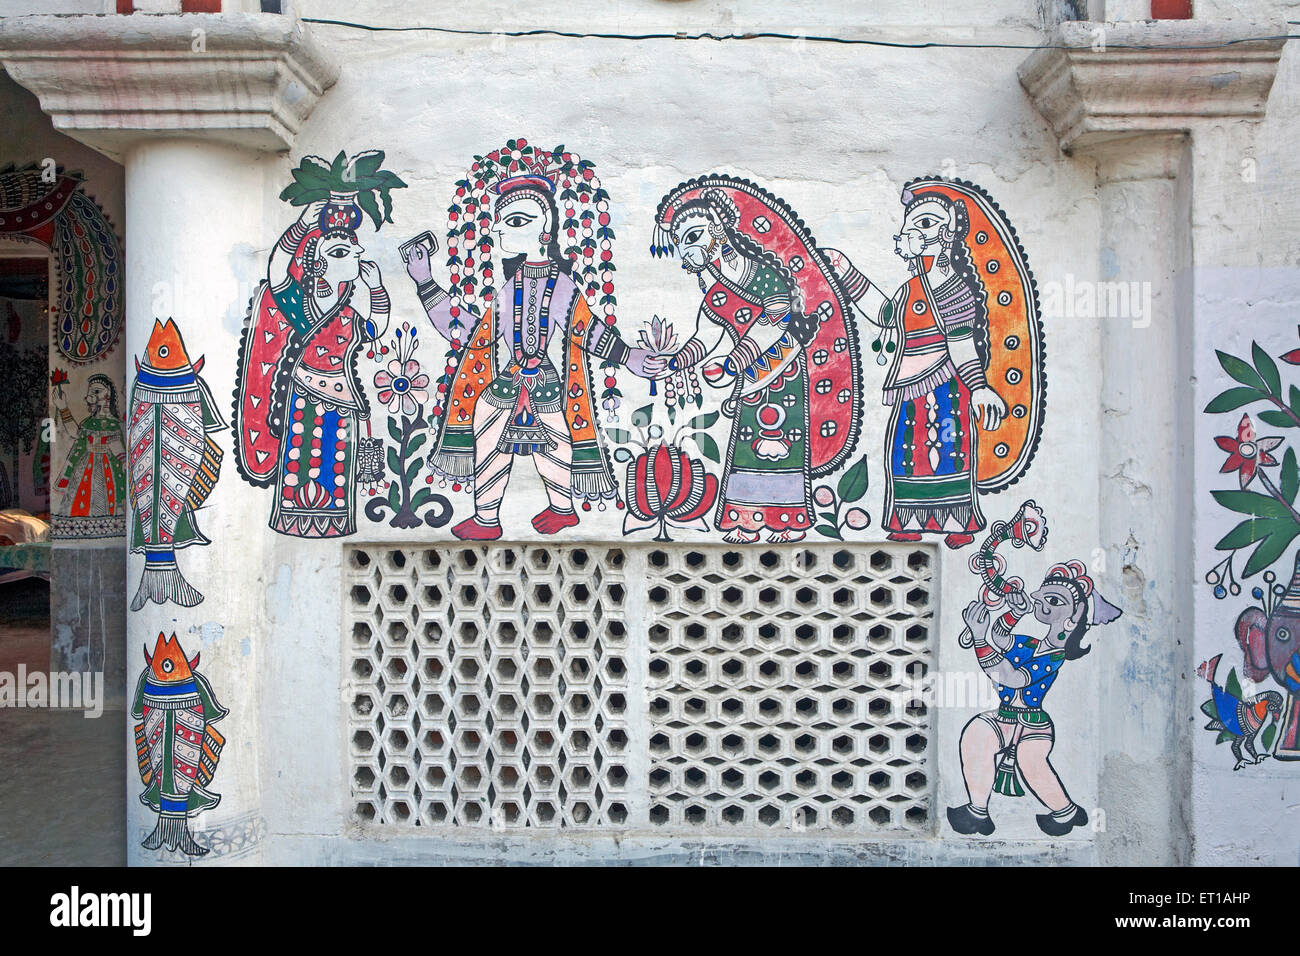 Peinture murale, peinture Madhubani, peinture Mithila, Madhubani, Darbhanga,Bihar, Inde, Asie Banque D'Images